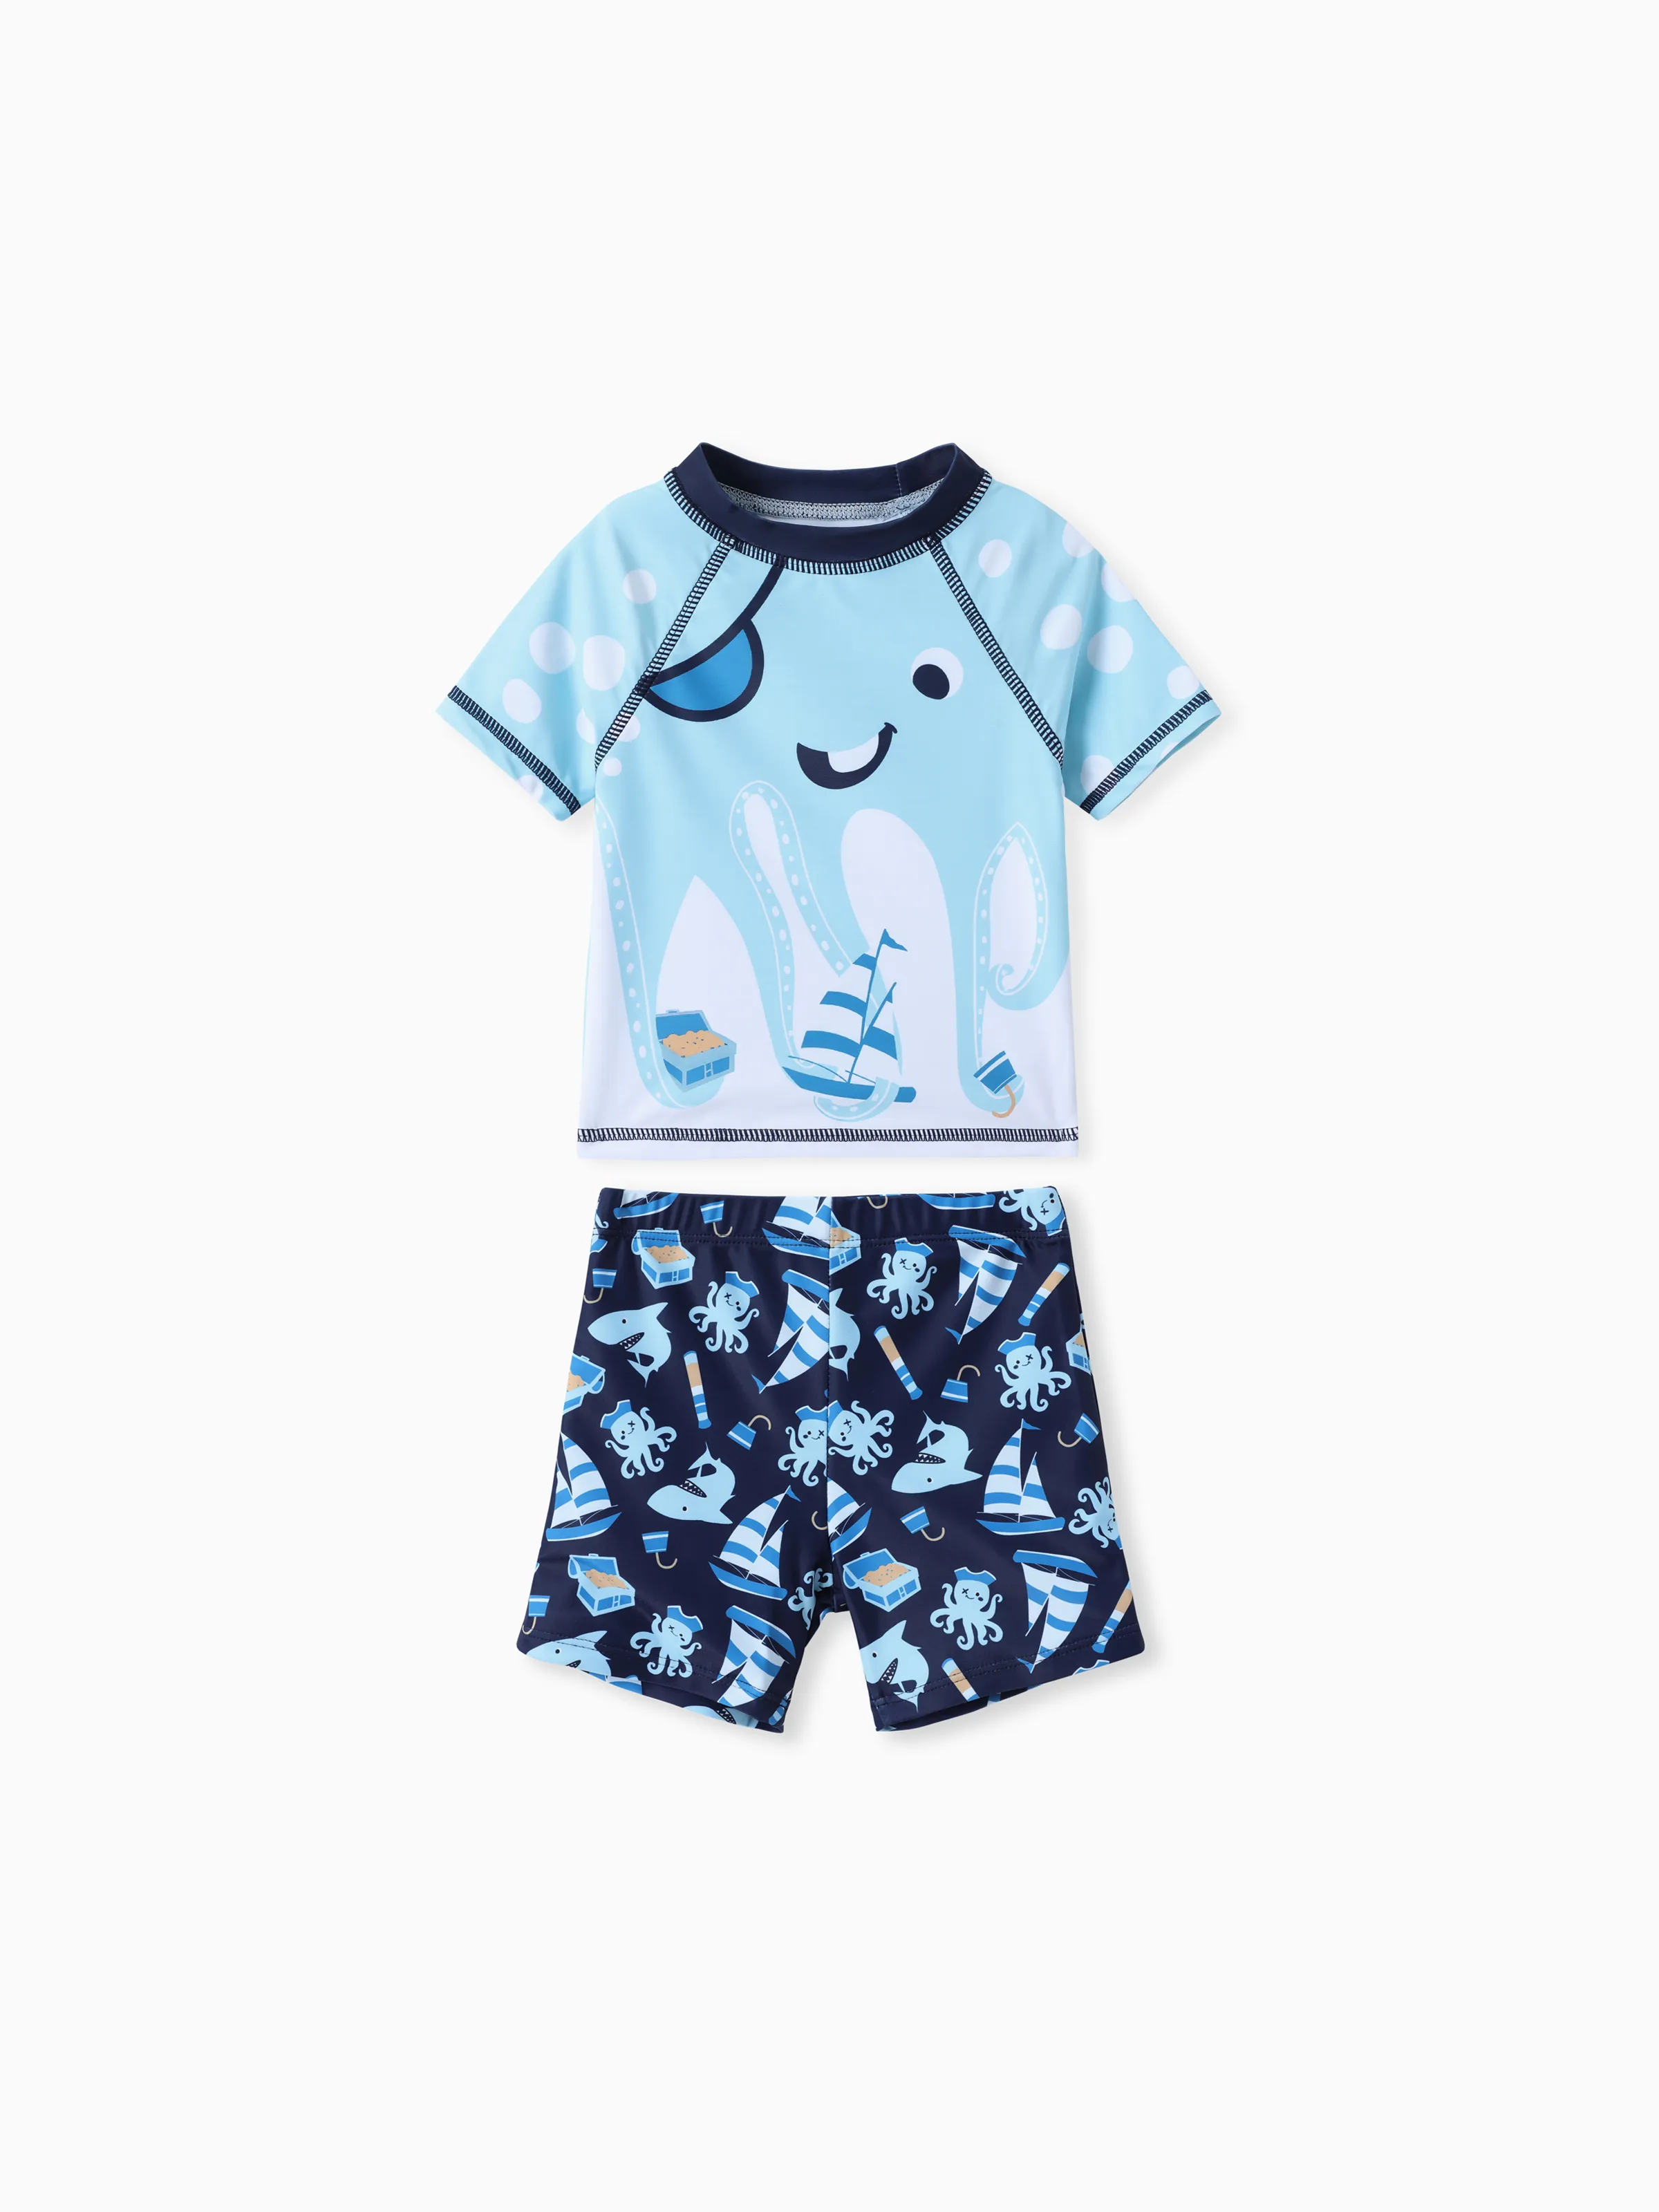 

Marine Animal 2pcs Toddler Boy Swimsuit Set - Childlike Style